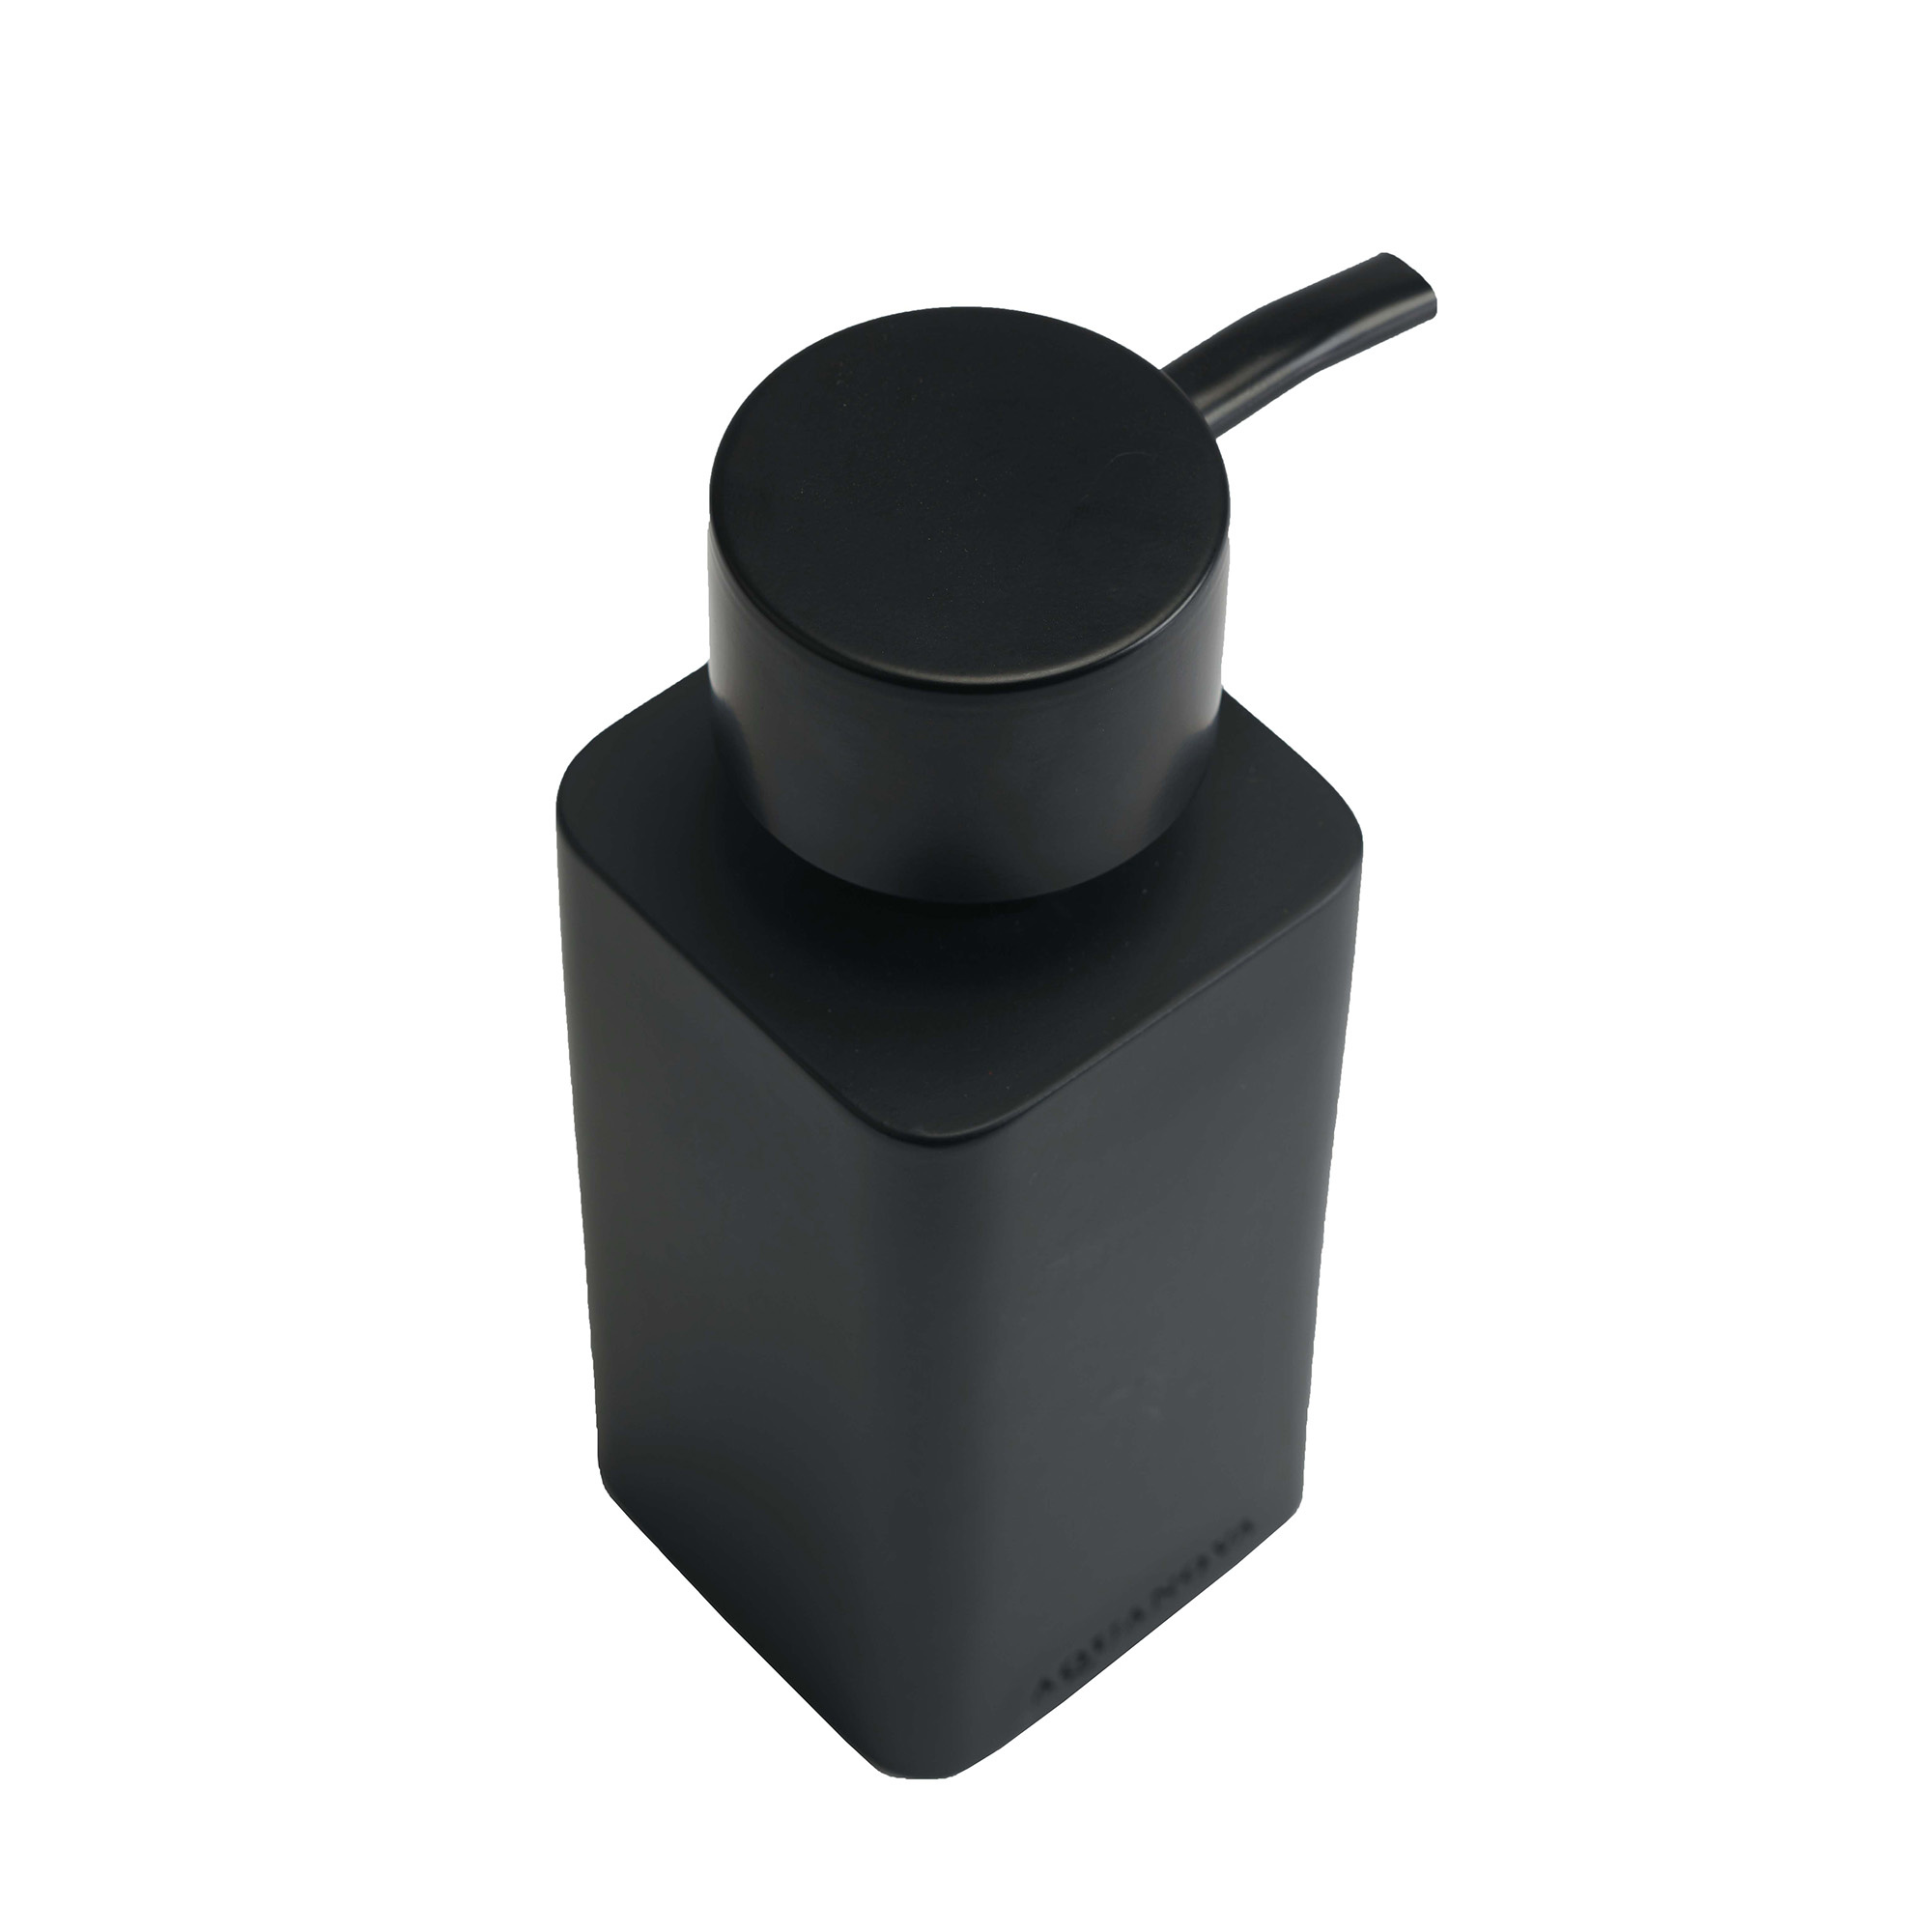 Dispensador de jabón Aquanova KHANA - negro mate - 140 ml (KHADIS-09)